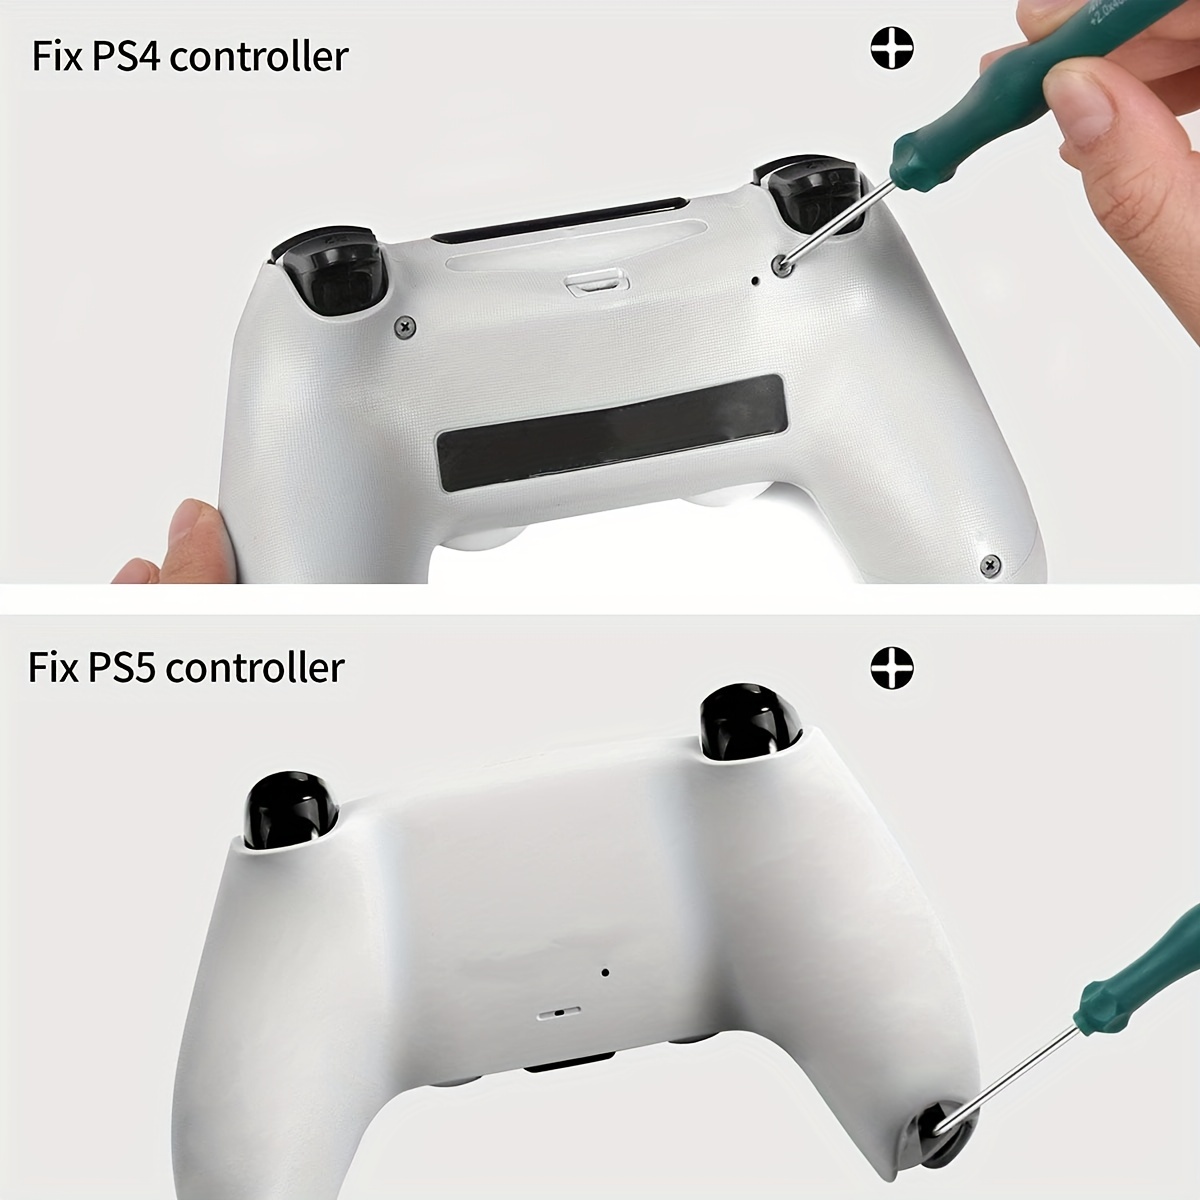 Kit d'outils de réparation pour PS5 PS4 PS3, UYXiNONE T6 T8 avec tournevis  CPhillips 2.0/4.0 pour Xbox One, Sony Playstation 4, series